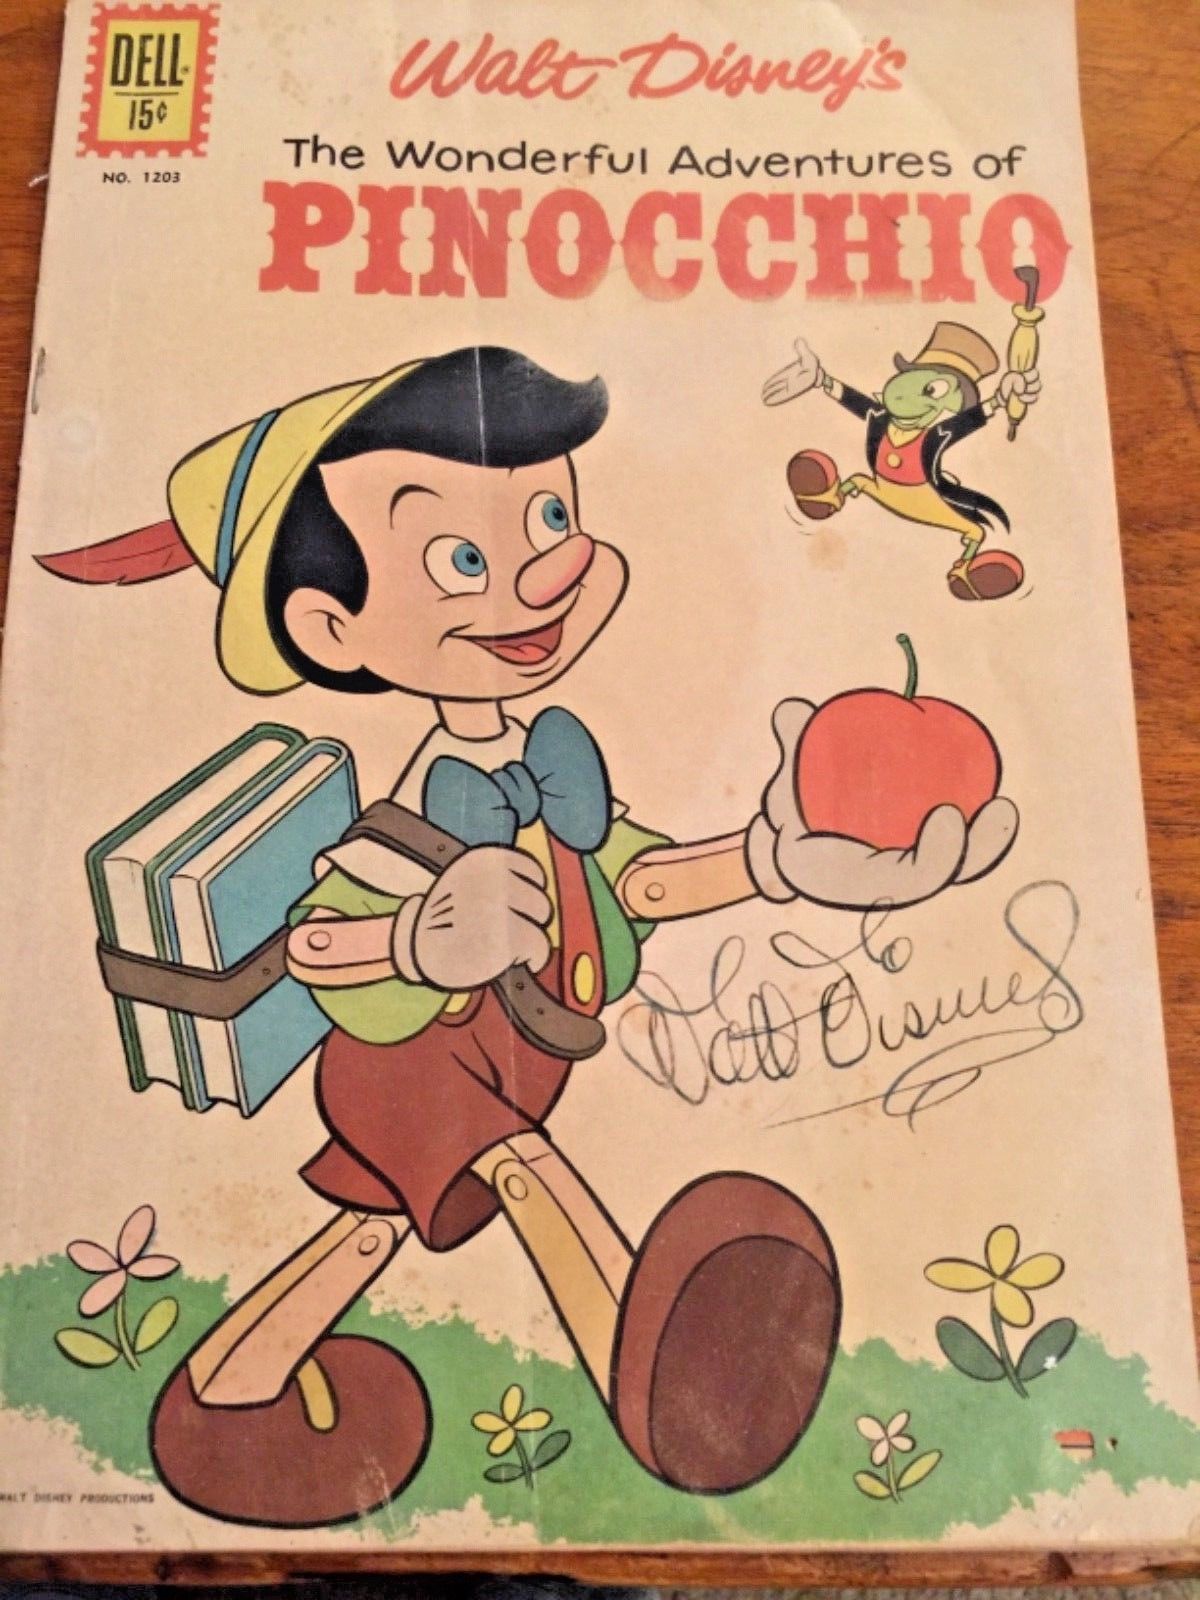 Pinocchio : 5 modèles collectors à prix astronomique